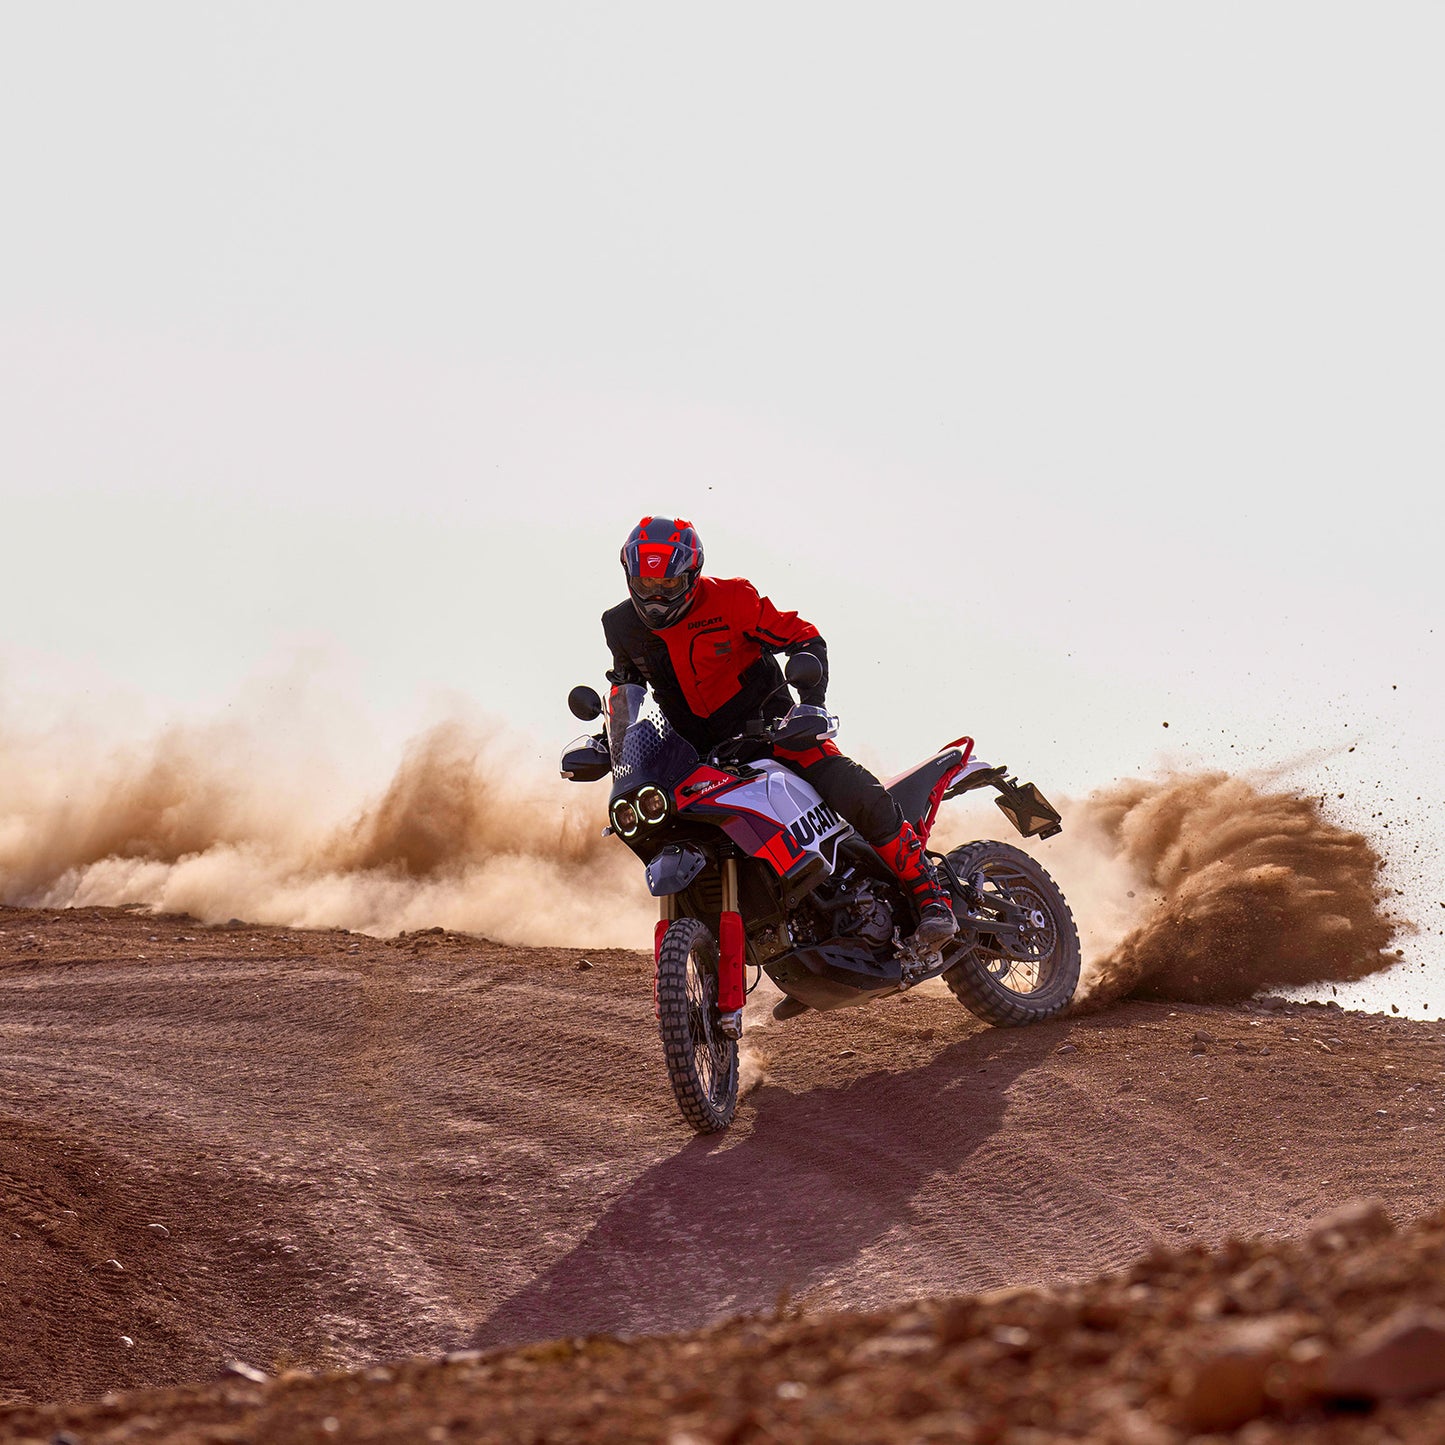 Ducati DesertX Rally Pre-Order